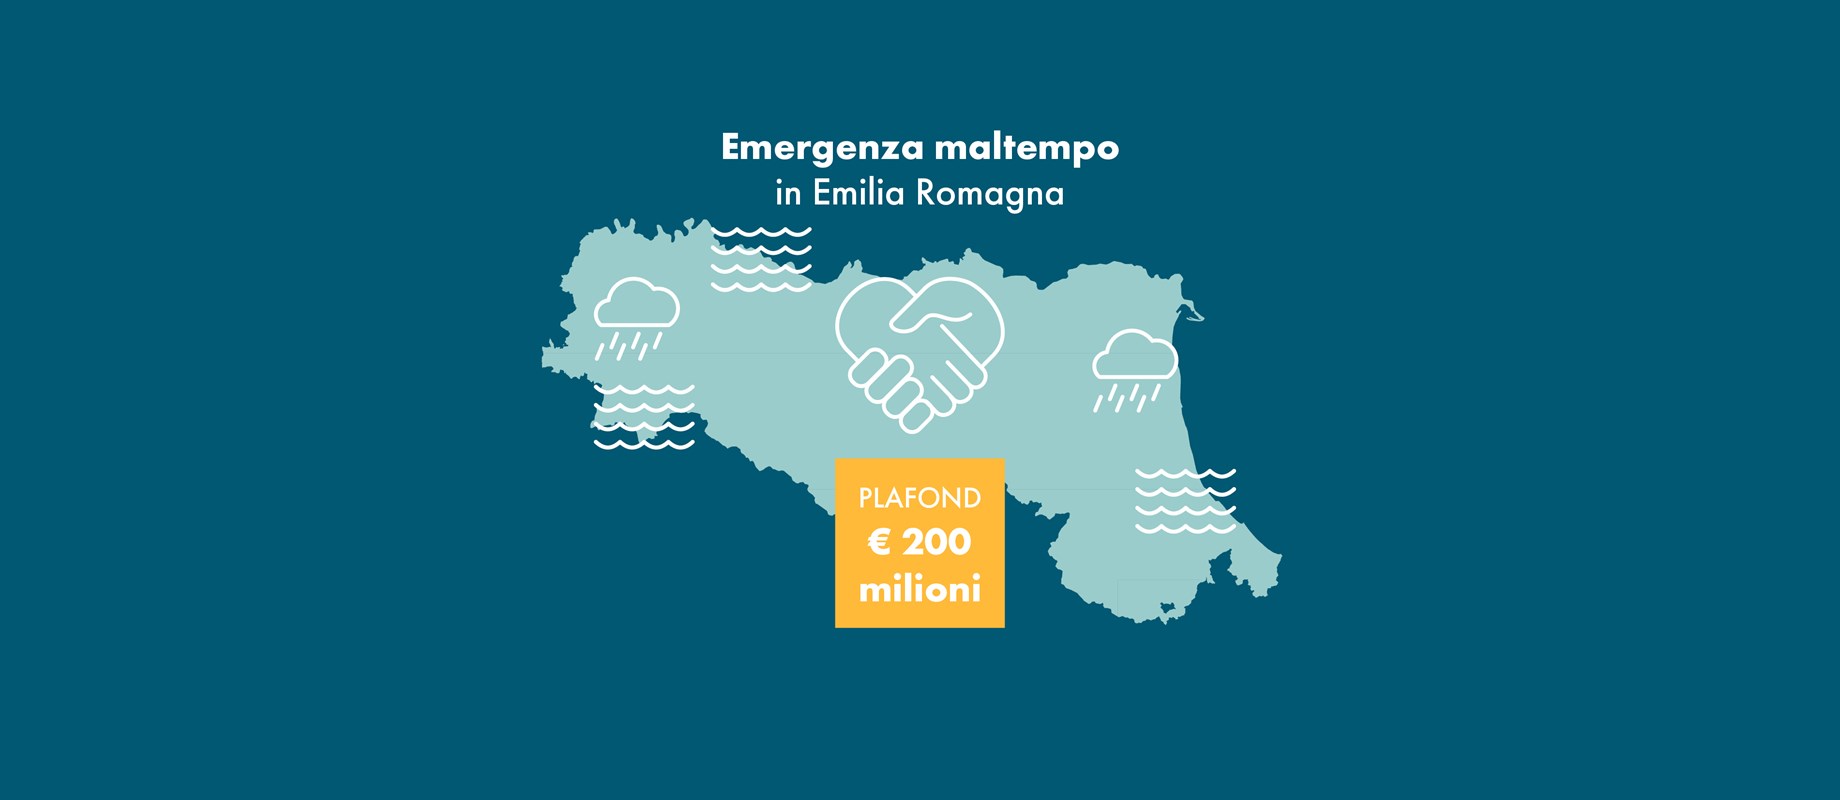 EMERGENZA MALTEMPO Banca Centro Emilia e il Gruppo Cassa Centrale vicini alle comunità con aiuti concreti. 